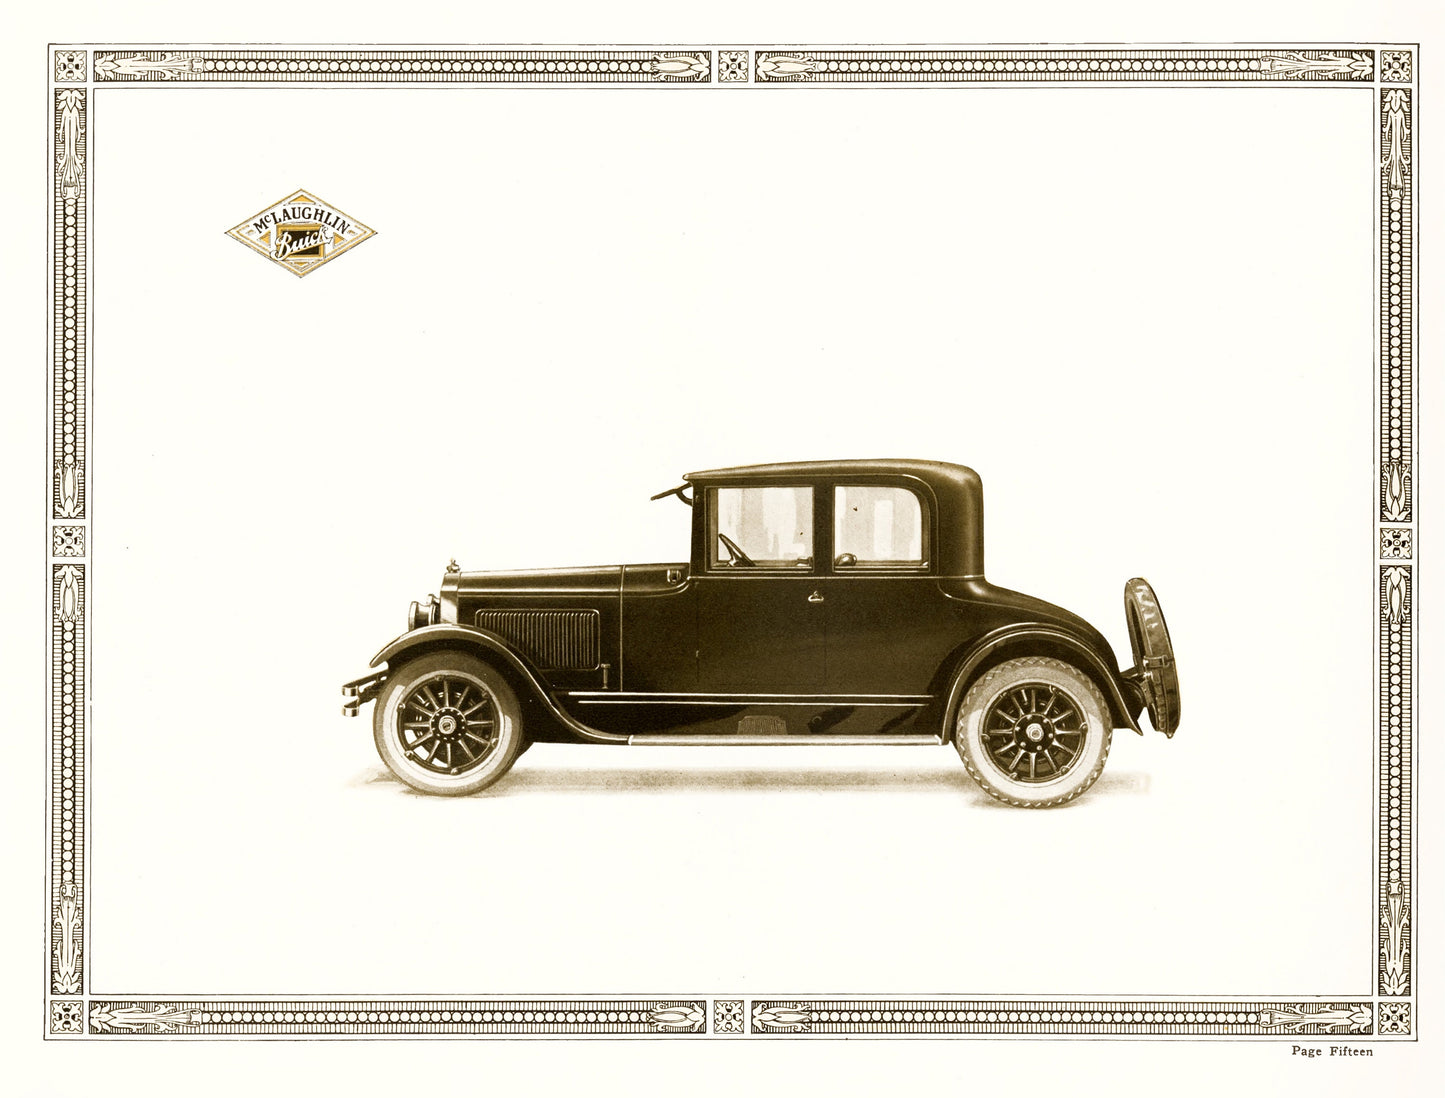 Antique Car Catalogue Advertisements [20 Images]